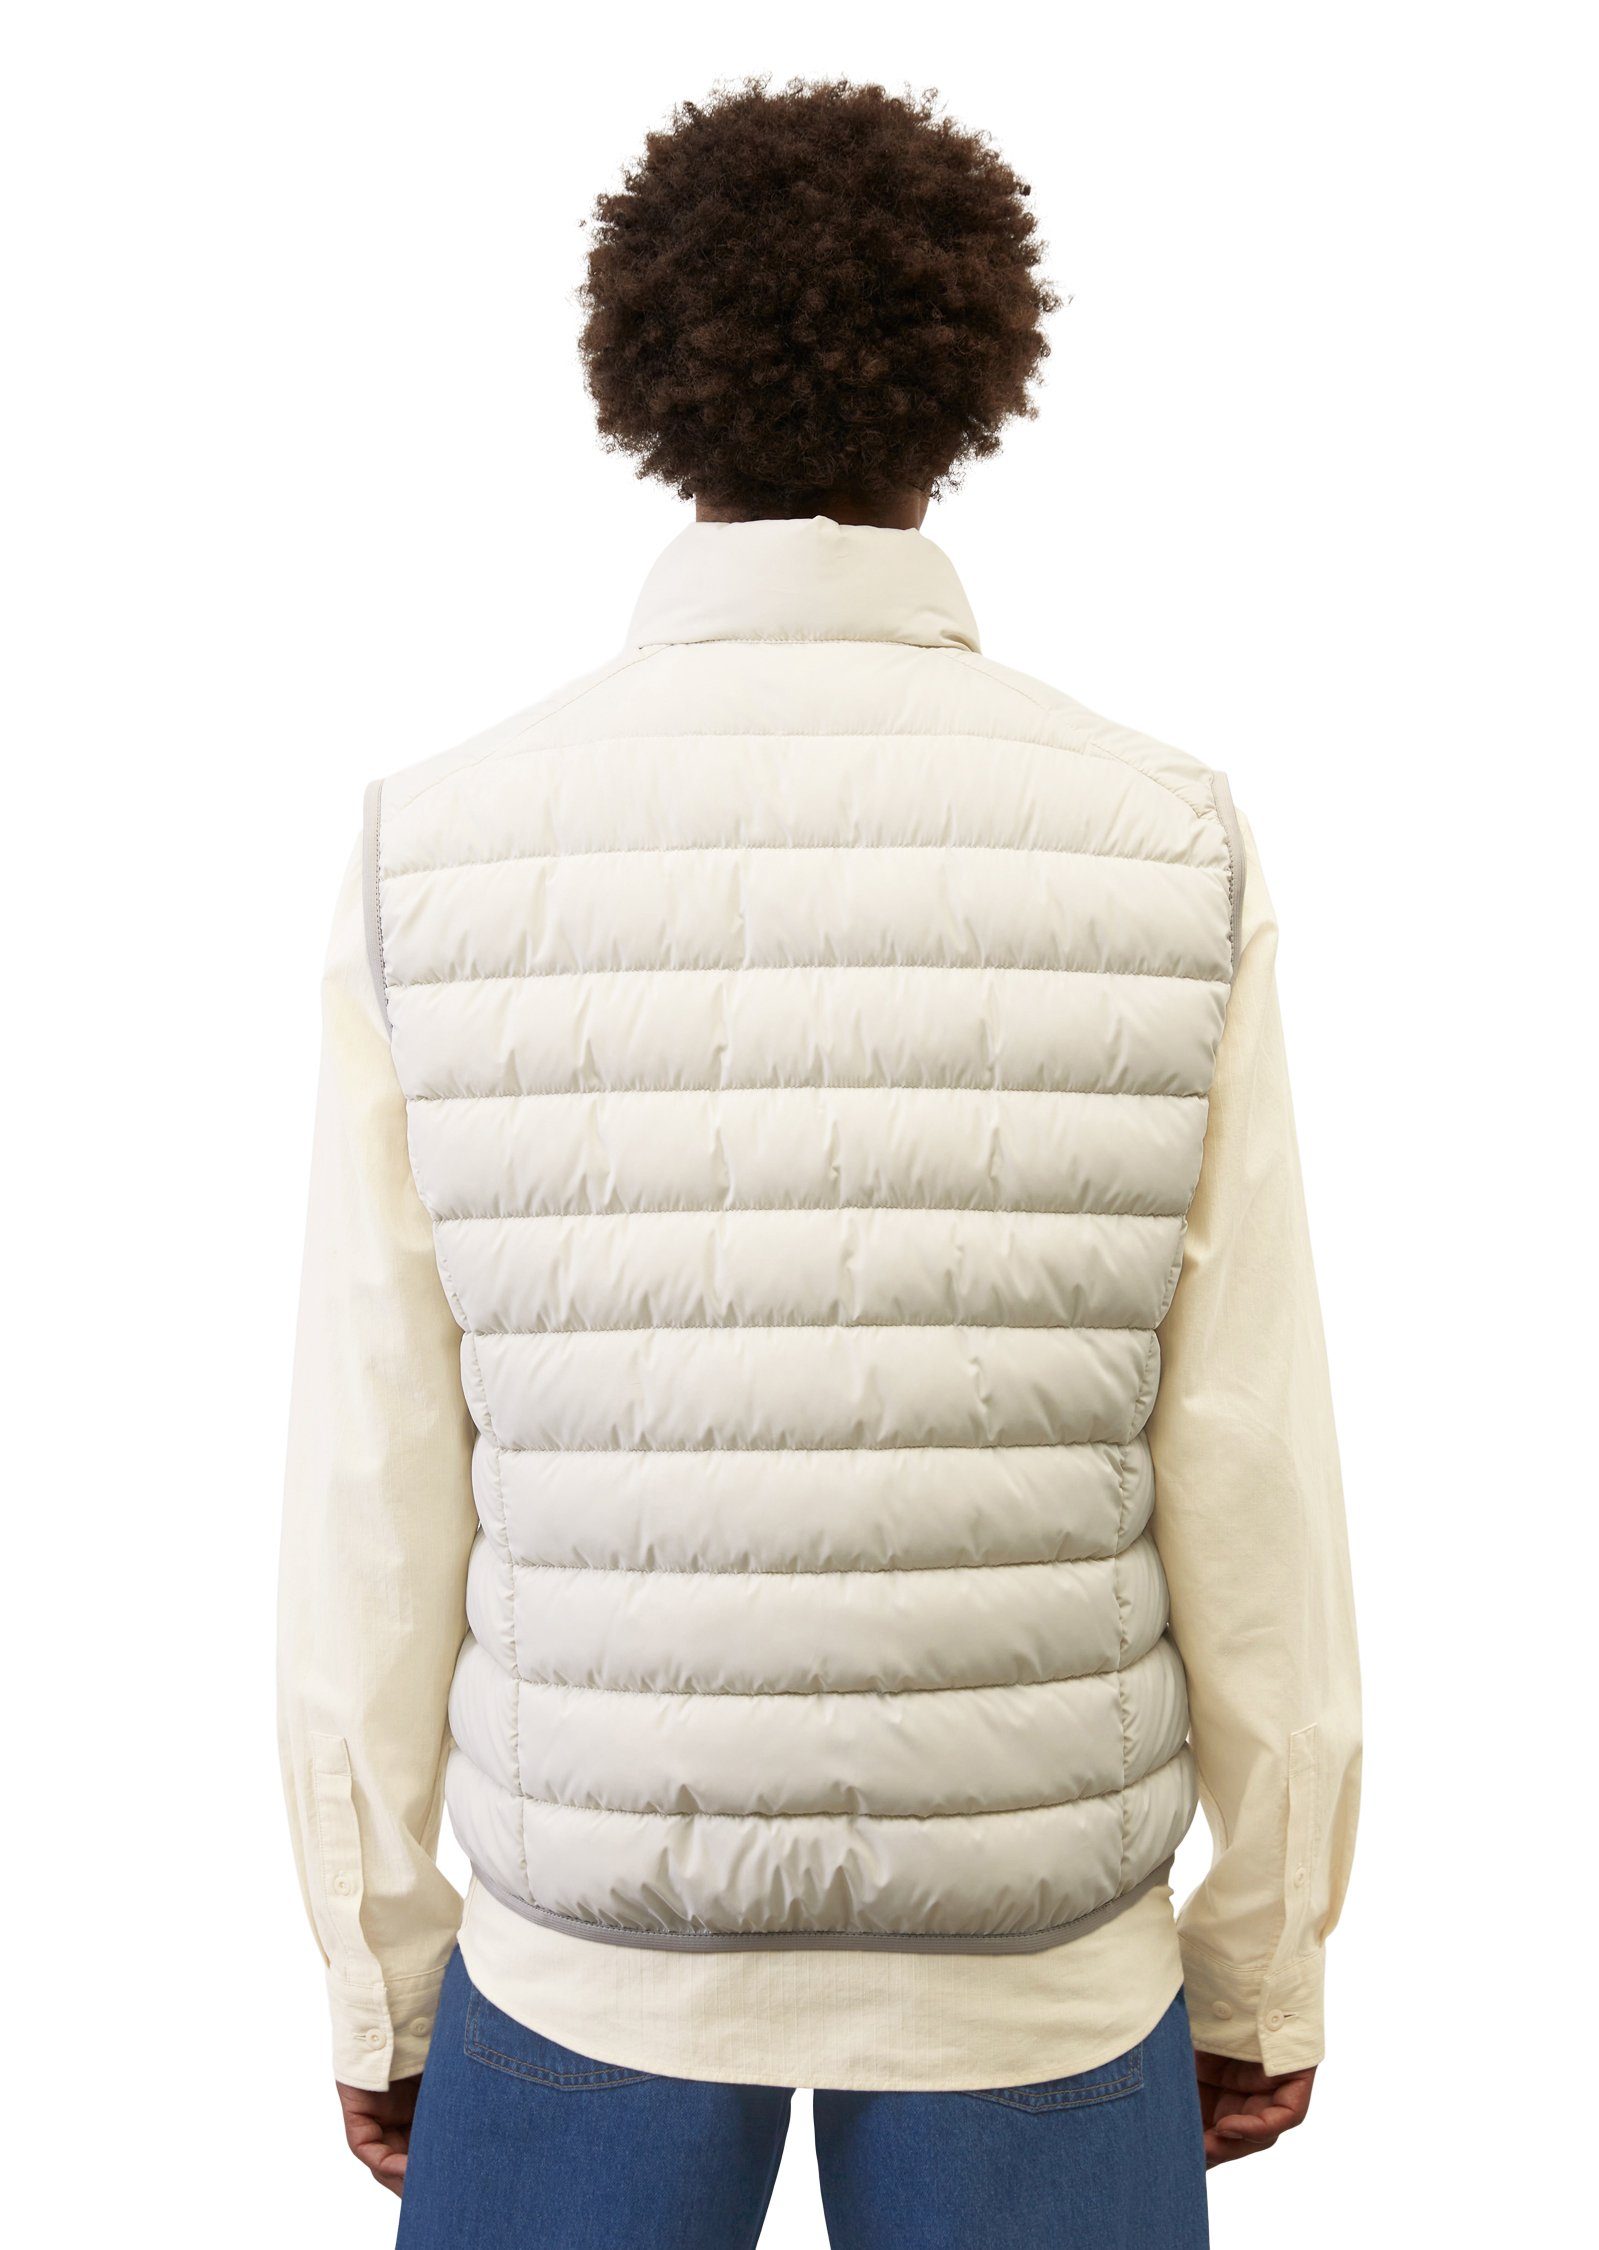 Marc O'Polo Steppweste Vest, stand-up wasserabweisender white collar sdnd, Oberfläche linen mit